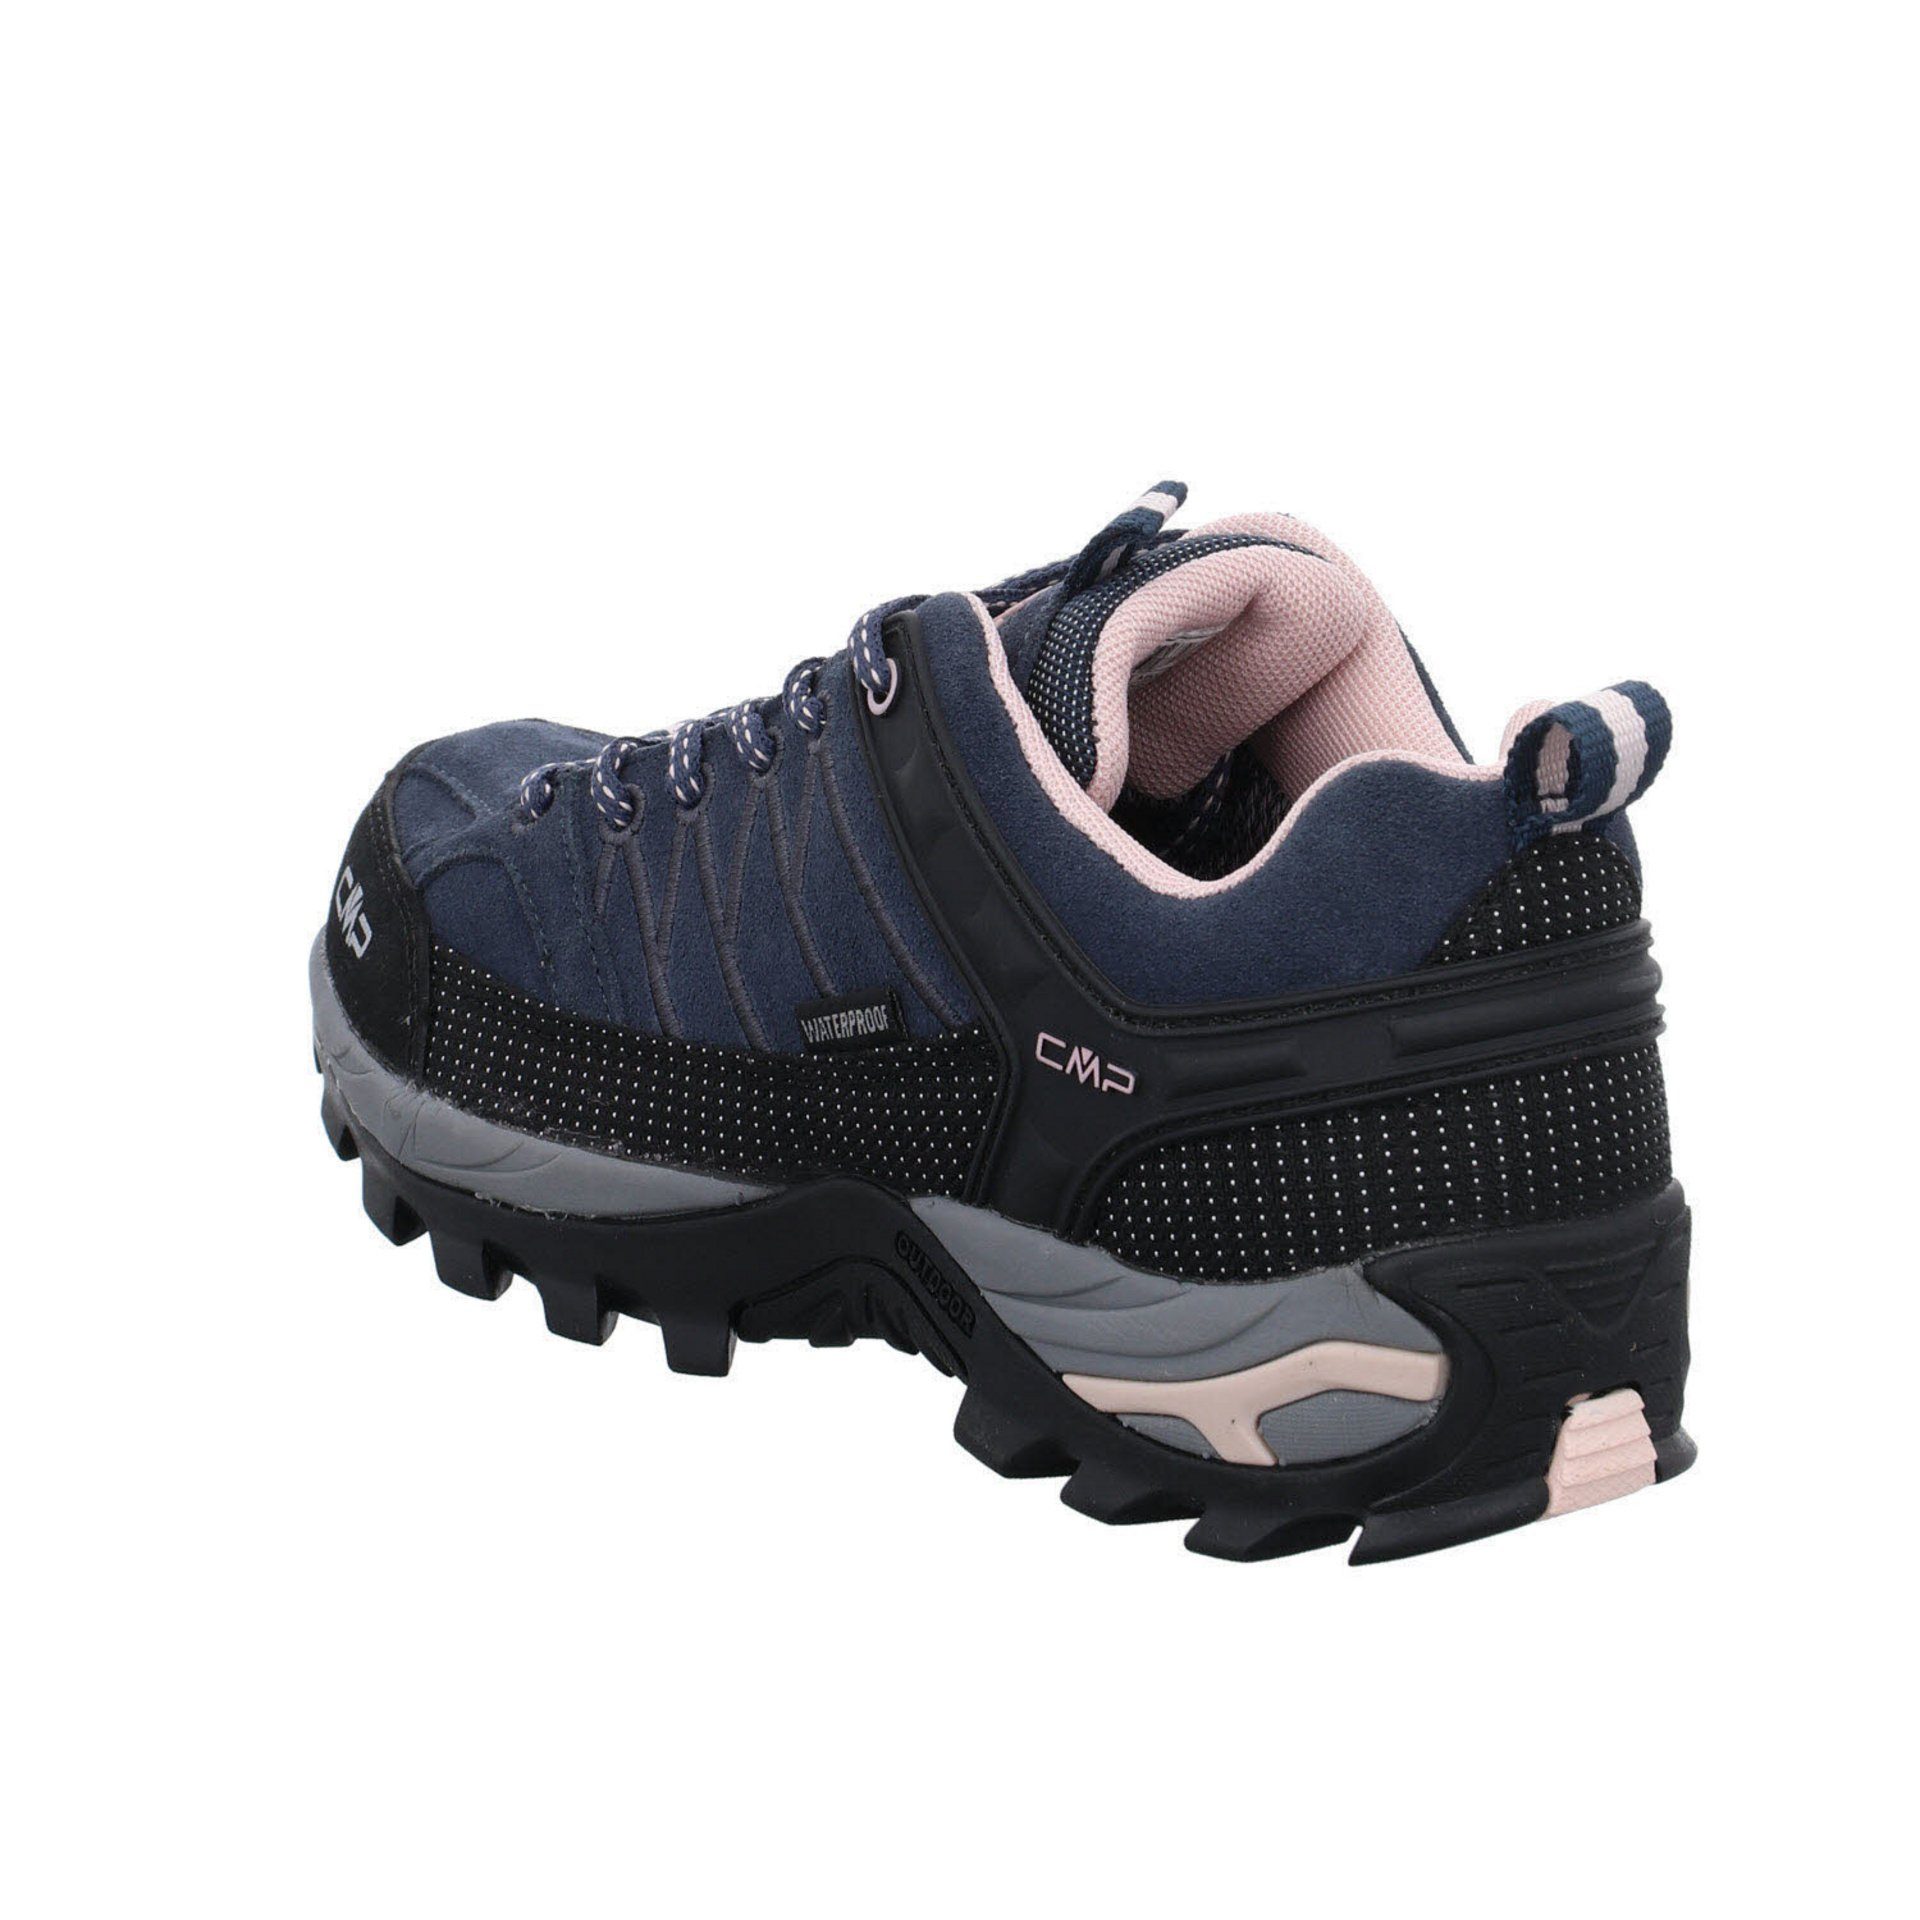 Riegel Outdoorschuh CMP Leder-/Textilkombination Damen (201) anthrazit Outdoorschuh Schuhe Low Outdoor